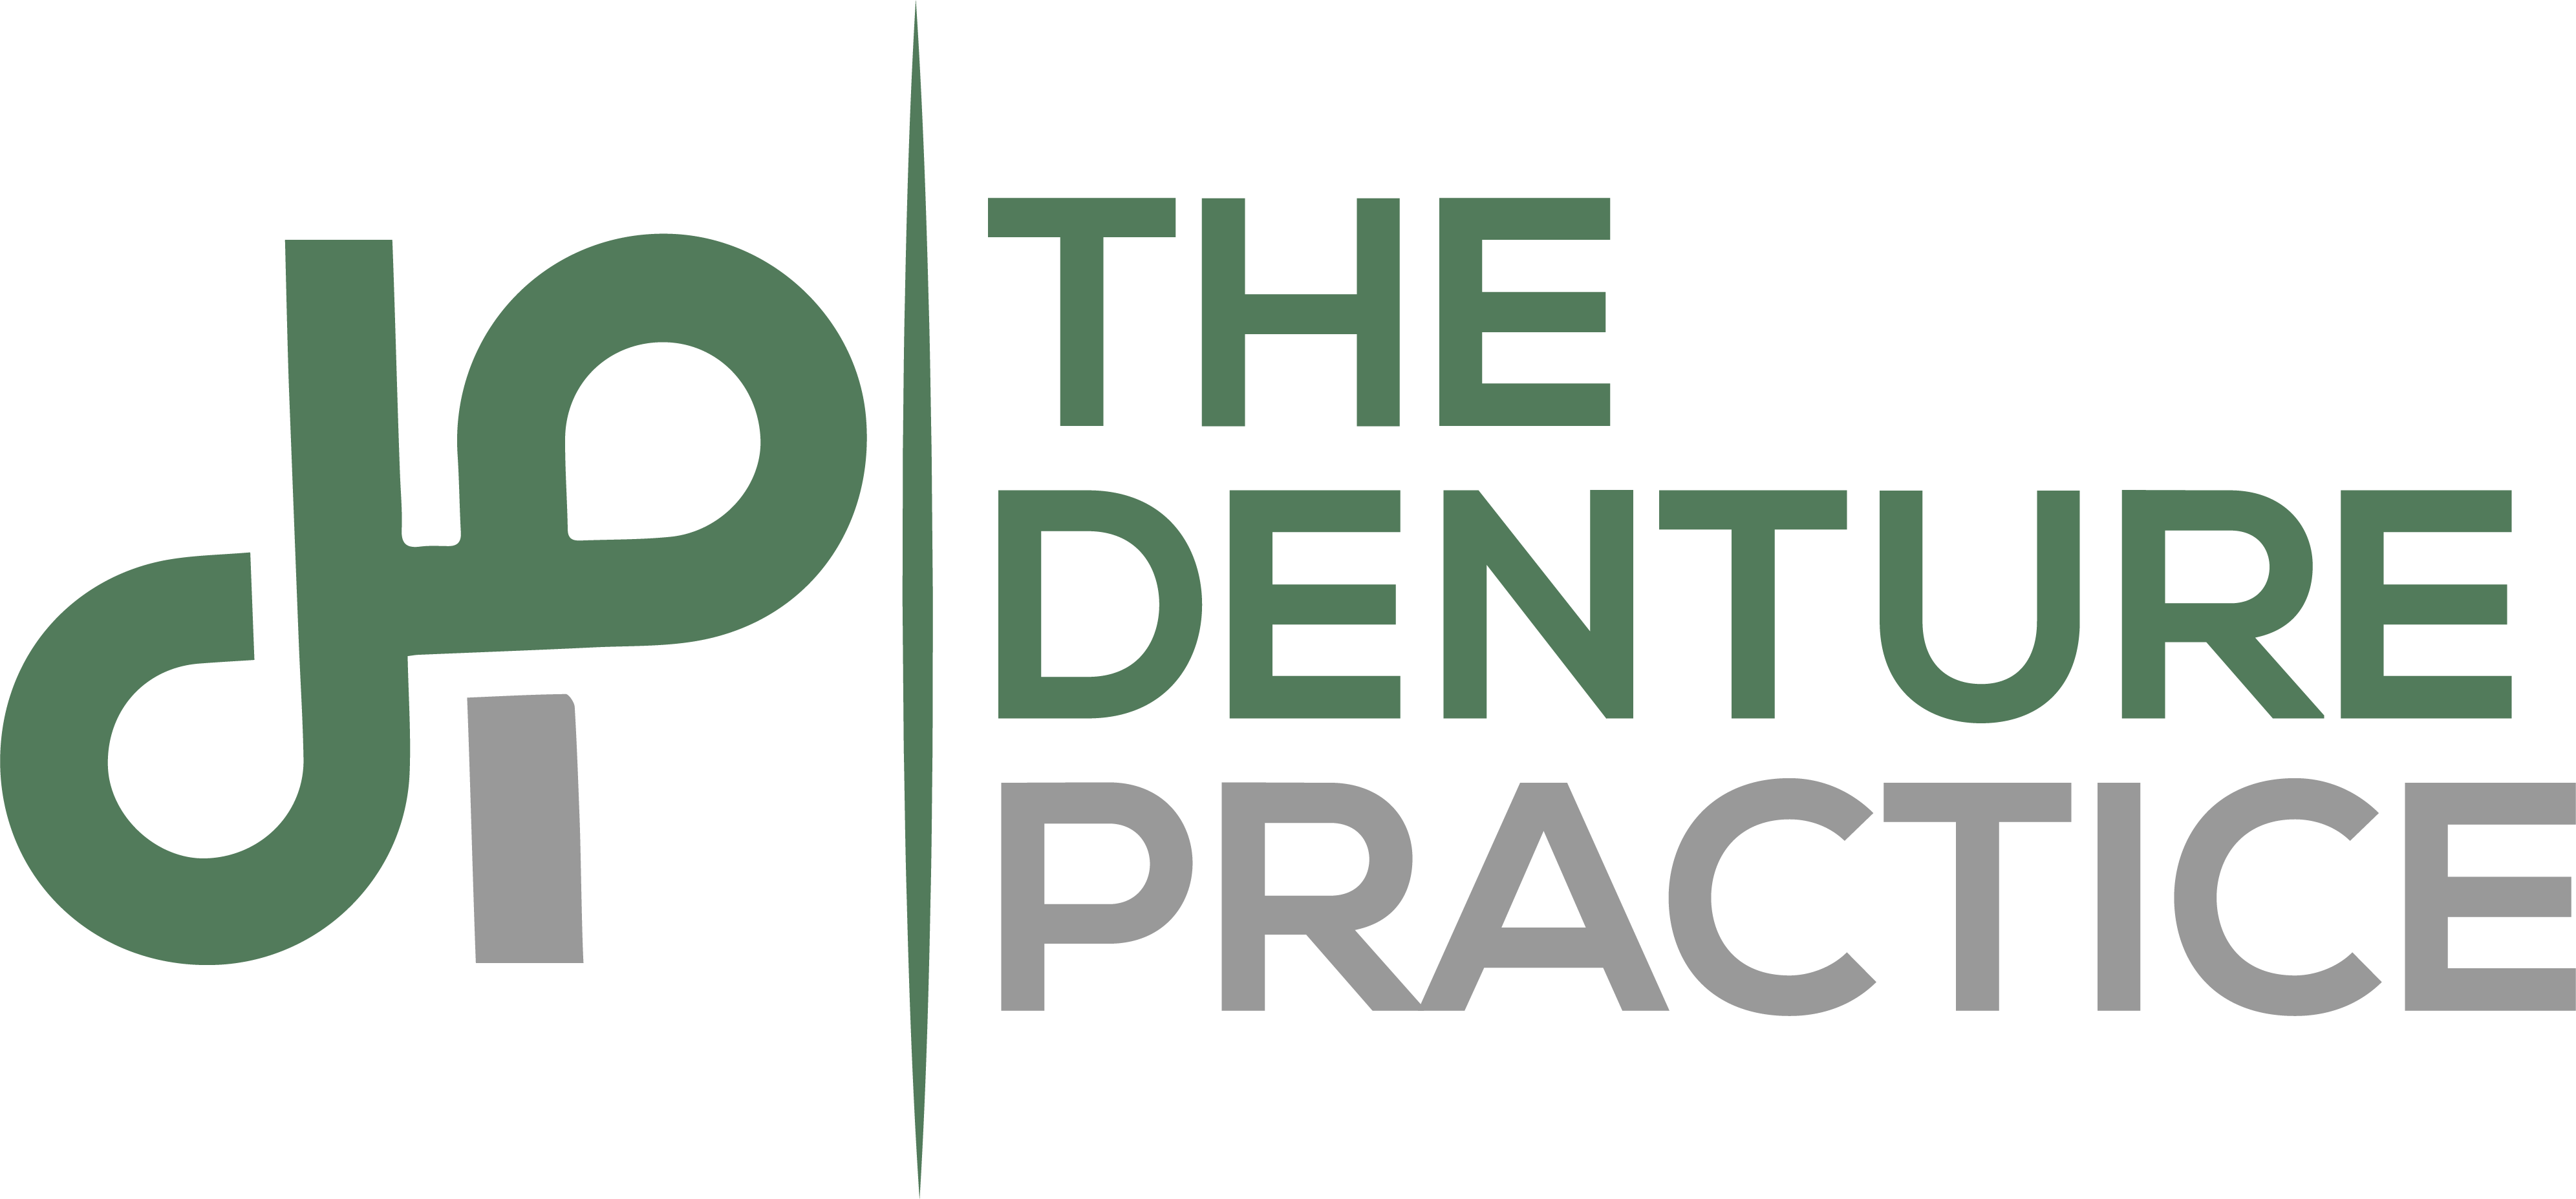 The Denture Practice